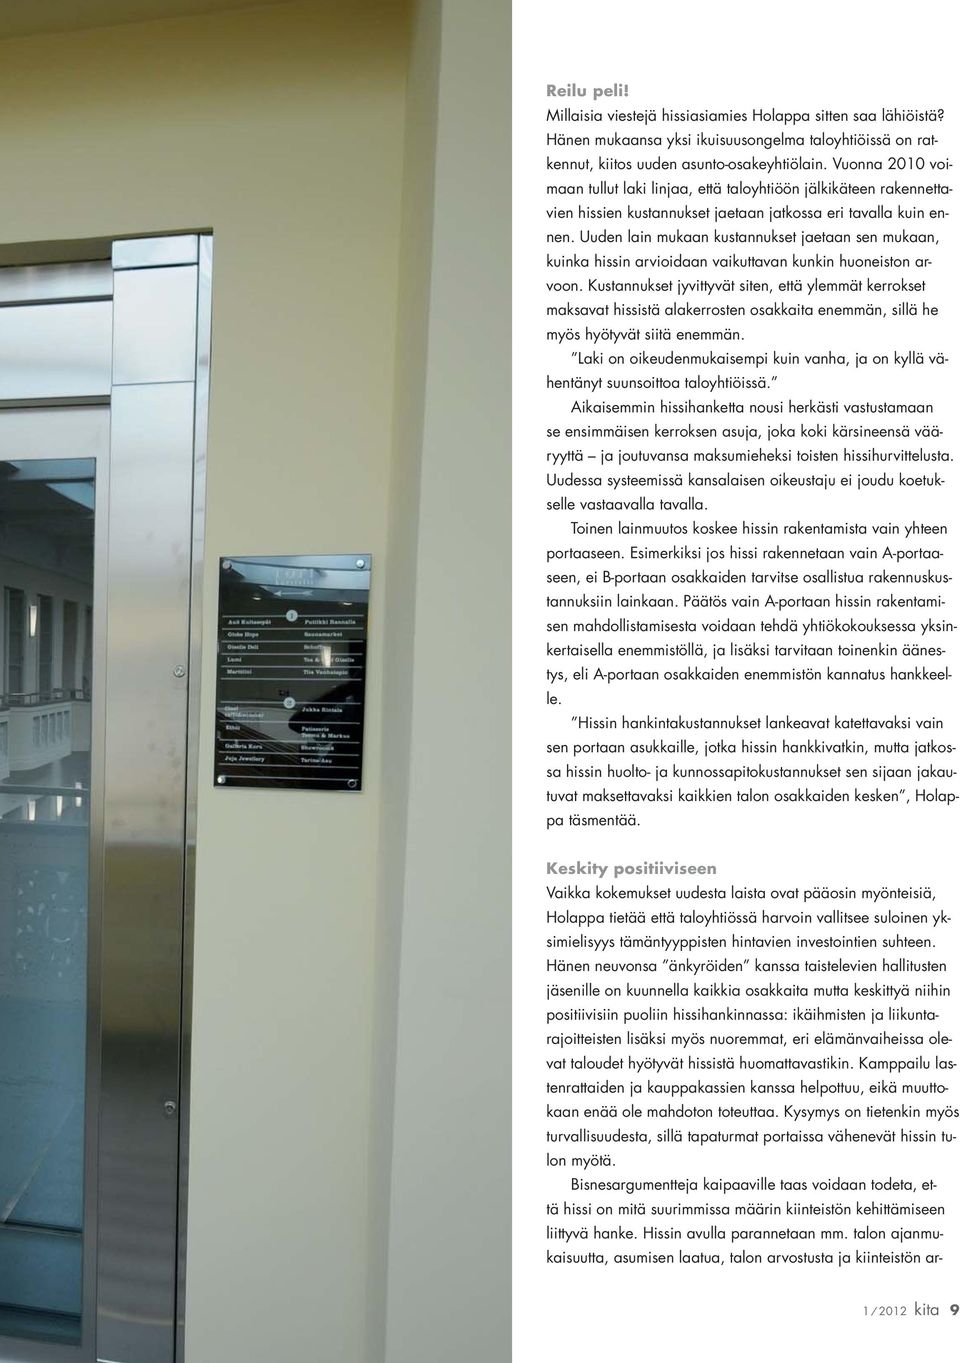 Uuden lain mukaan kustannukset jaetaan sen mukaan, kuinka hissin arvioidaan vaikuttavan kunkin huoneiston arvoon.